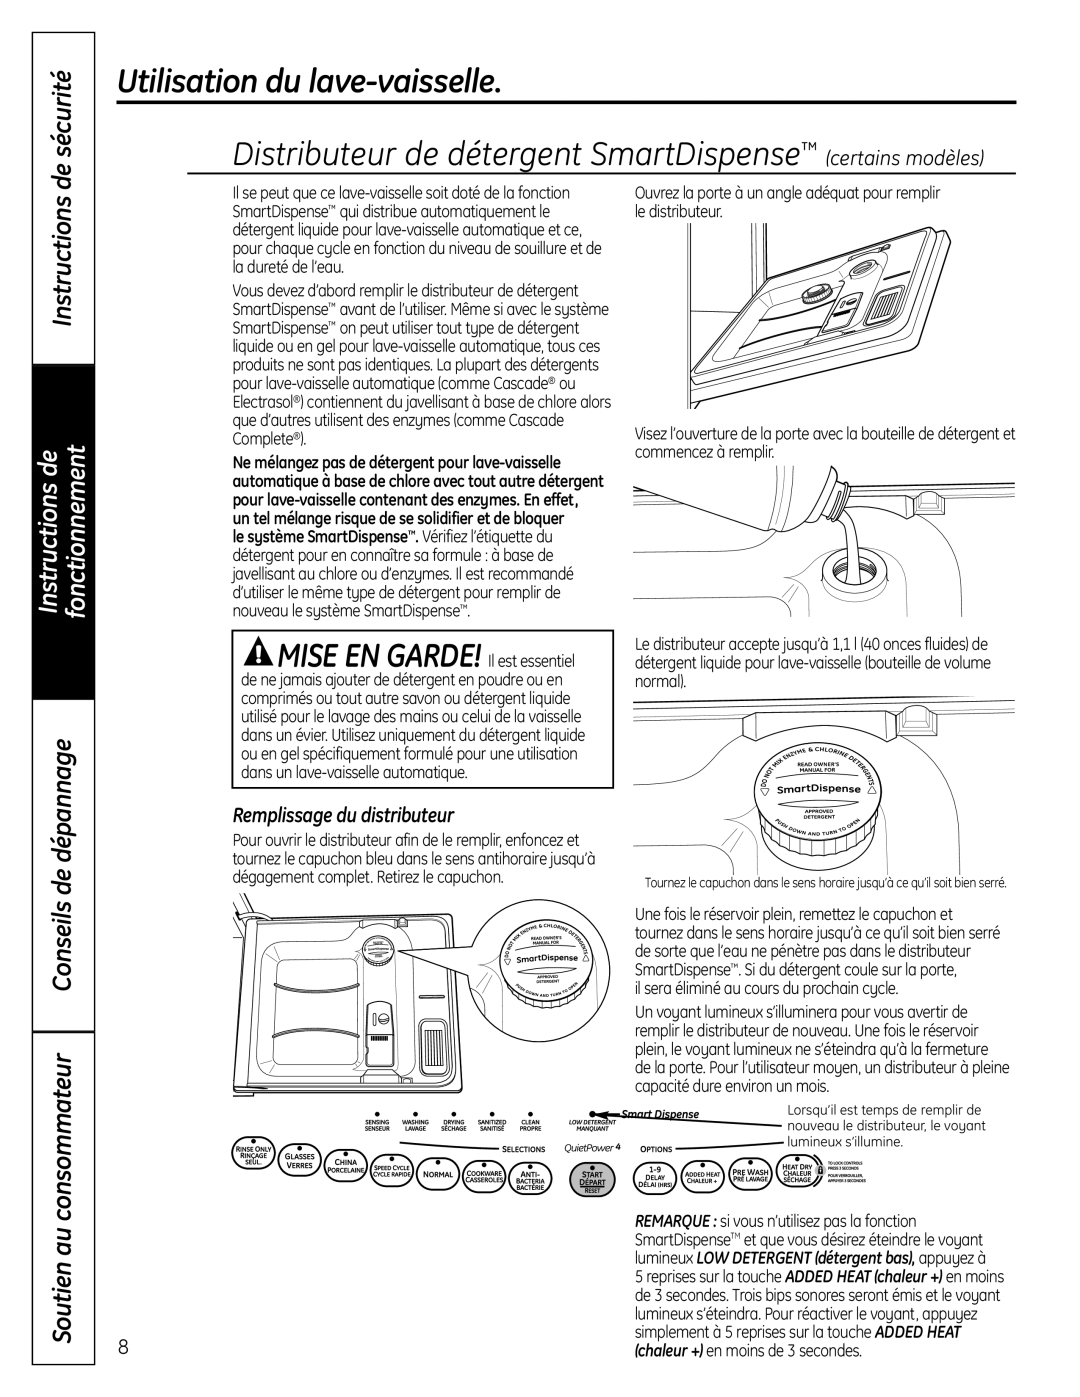 GE PDW7000 Series Distributeur de détergent SmartDispense certains modèles, Instructions, Utilisation du lave-vaisselle 